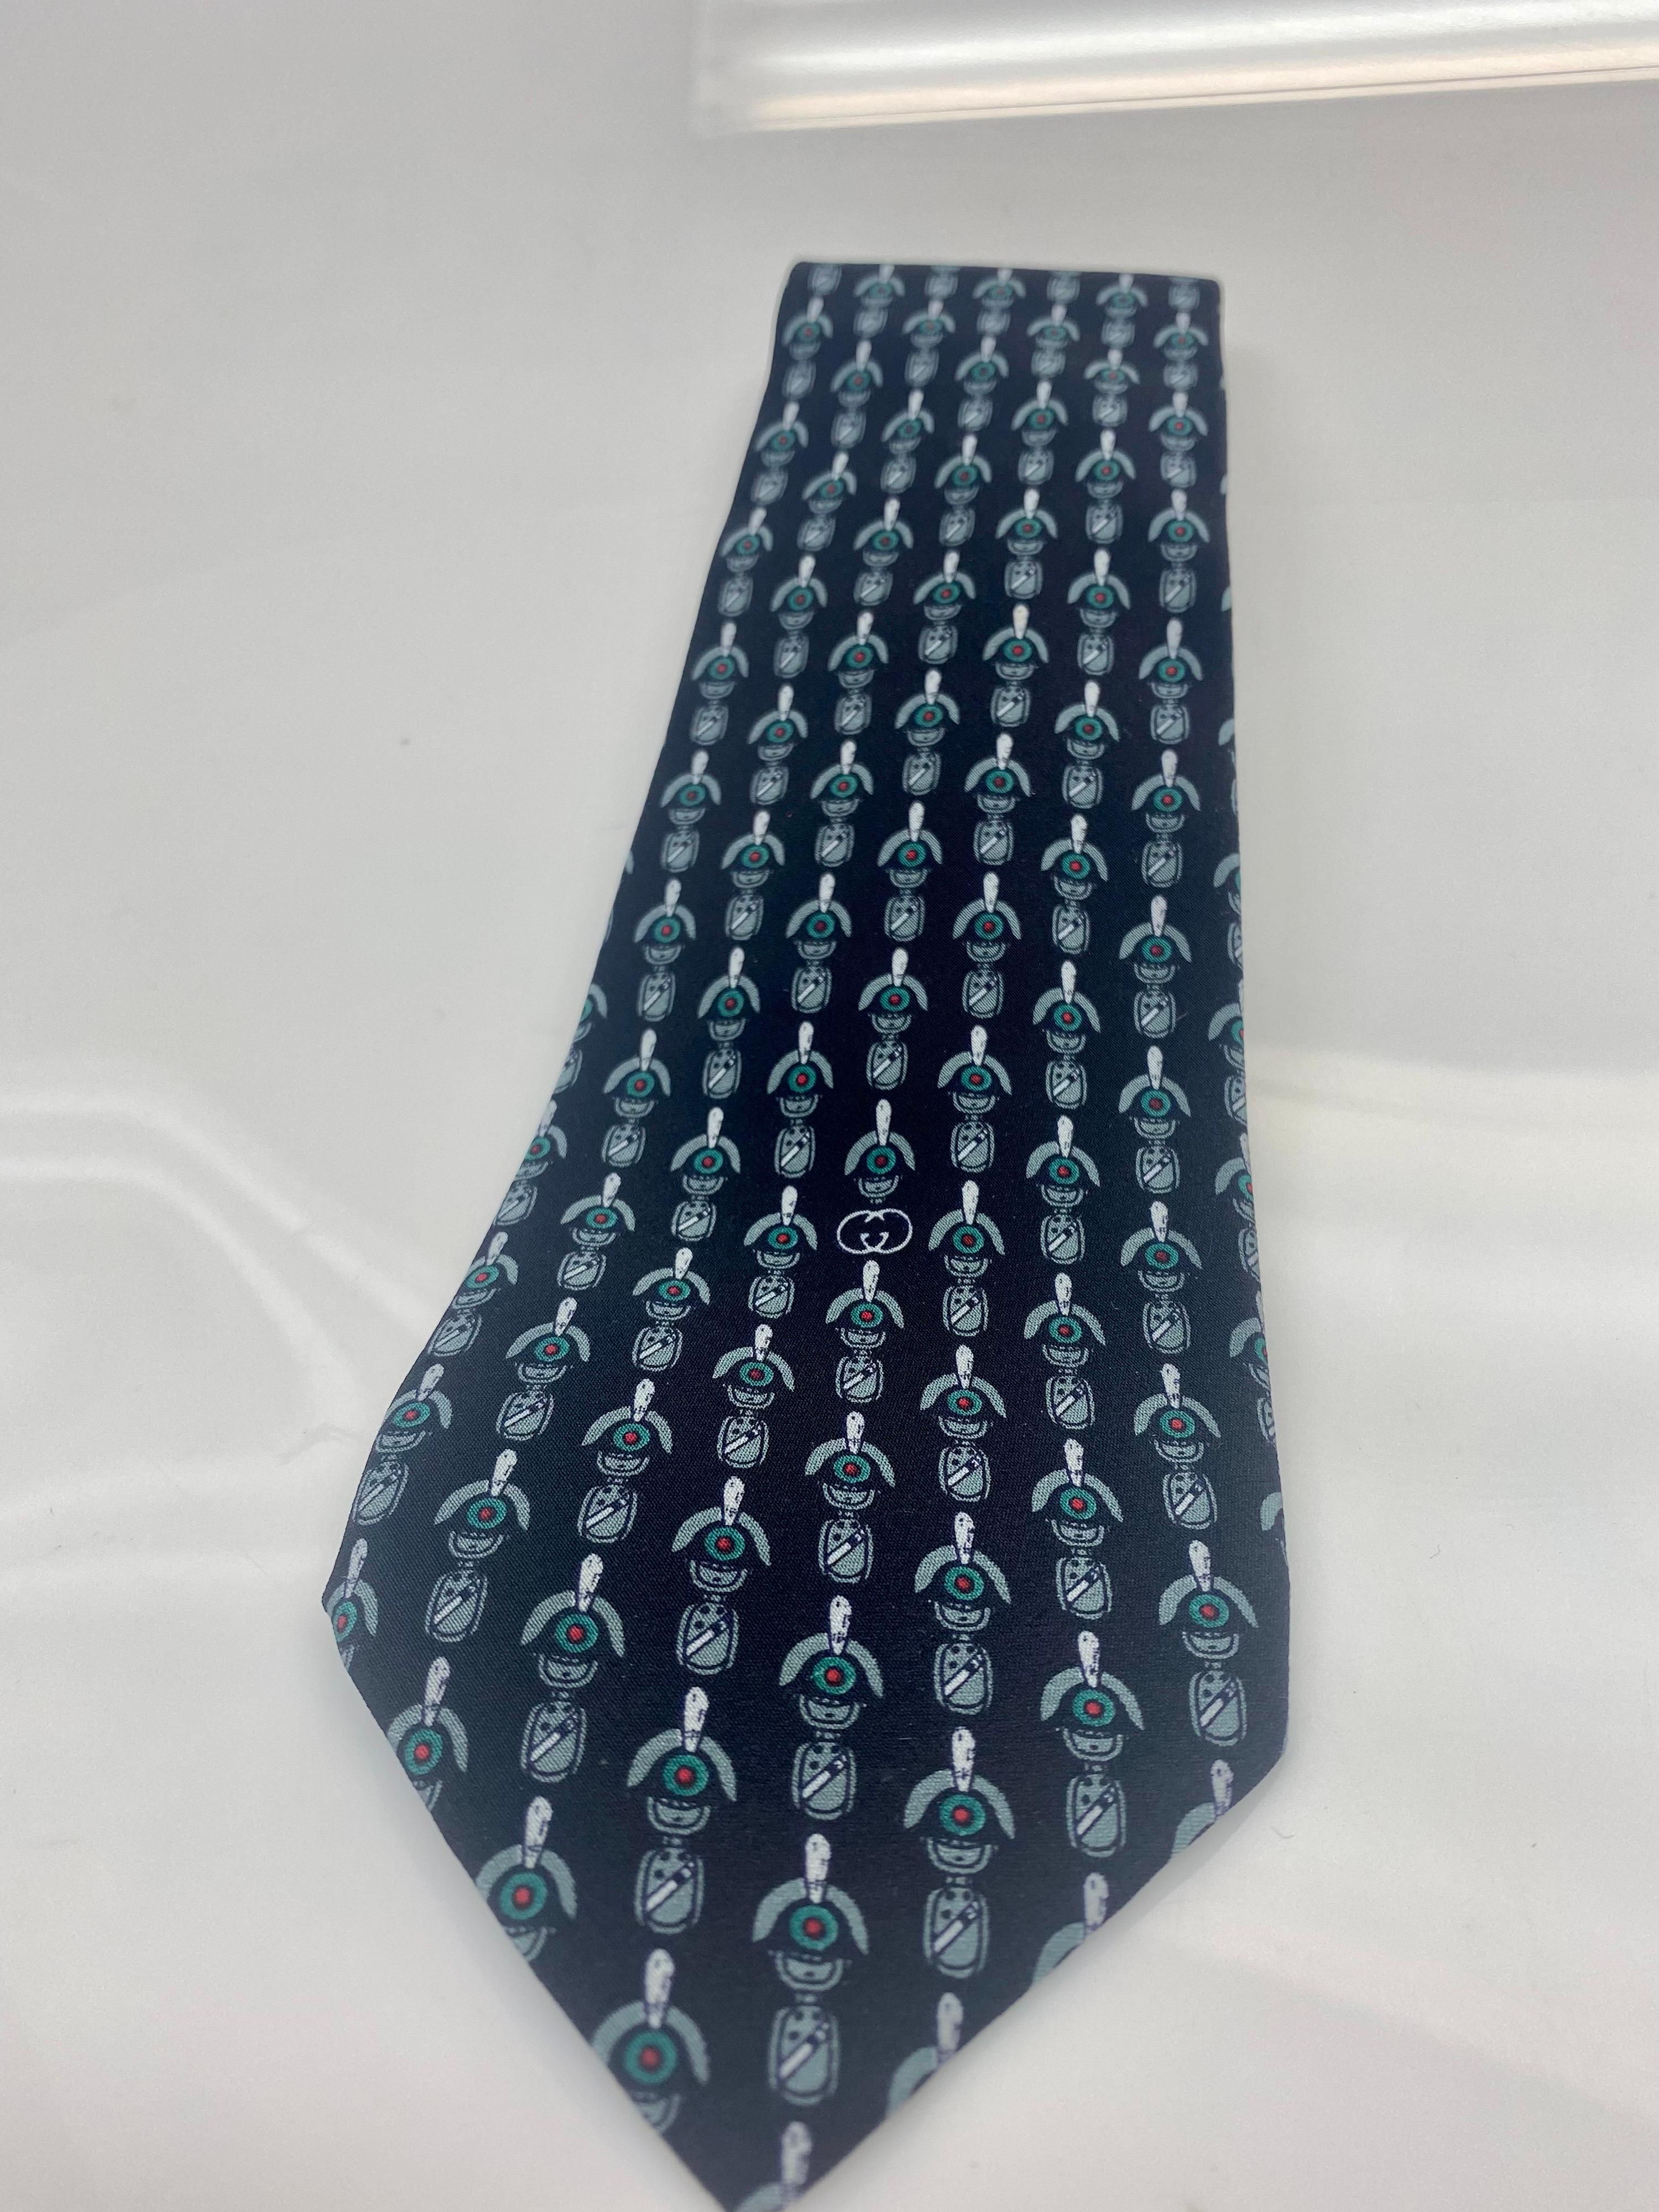 Cravate Gucci en soie imprimée noir, vert et blanc. 
Une pièce sophistiquée et classique qui s'intègre parfaitement à toute garde-robe. L'article est en bon état, usure conforme à l'âge. 

Largeur : 3.3